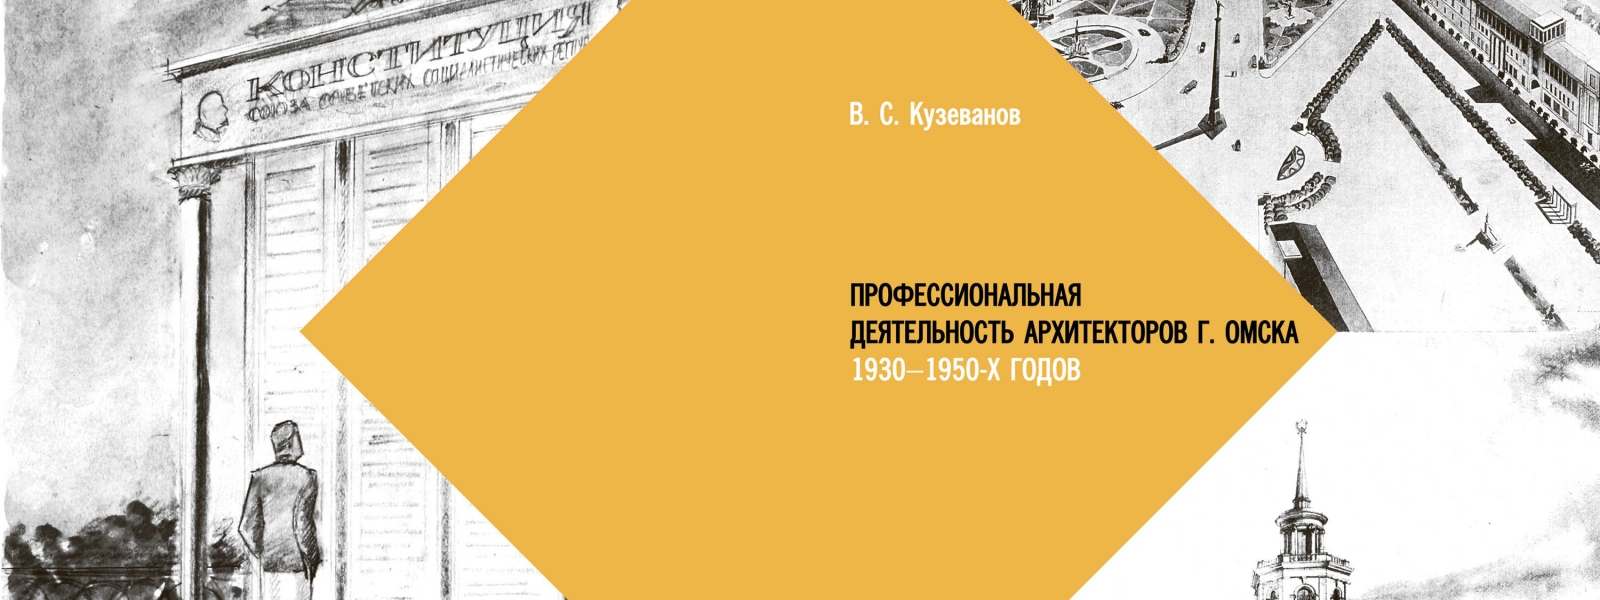 work-Профессиональная деятельность архитекторов Омска  1930-1950 годов: монография